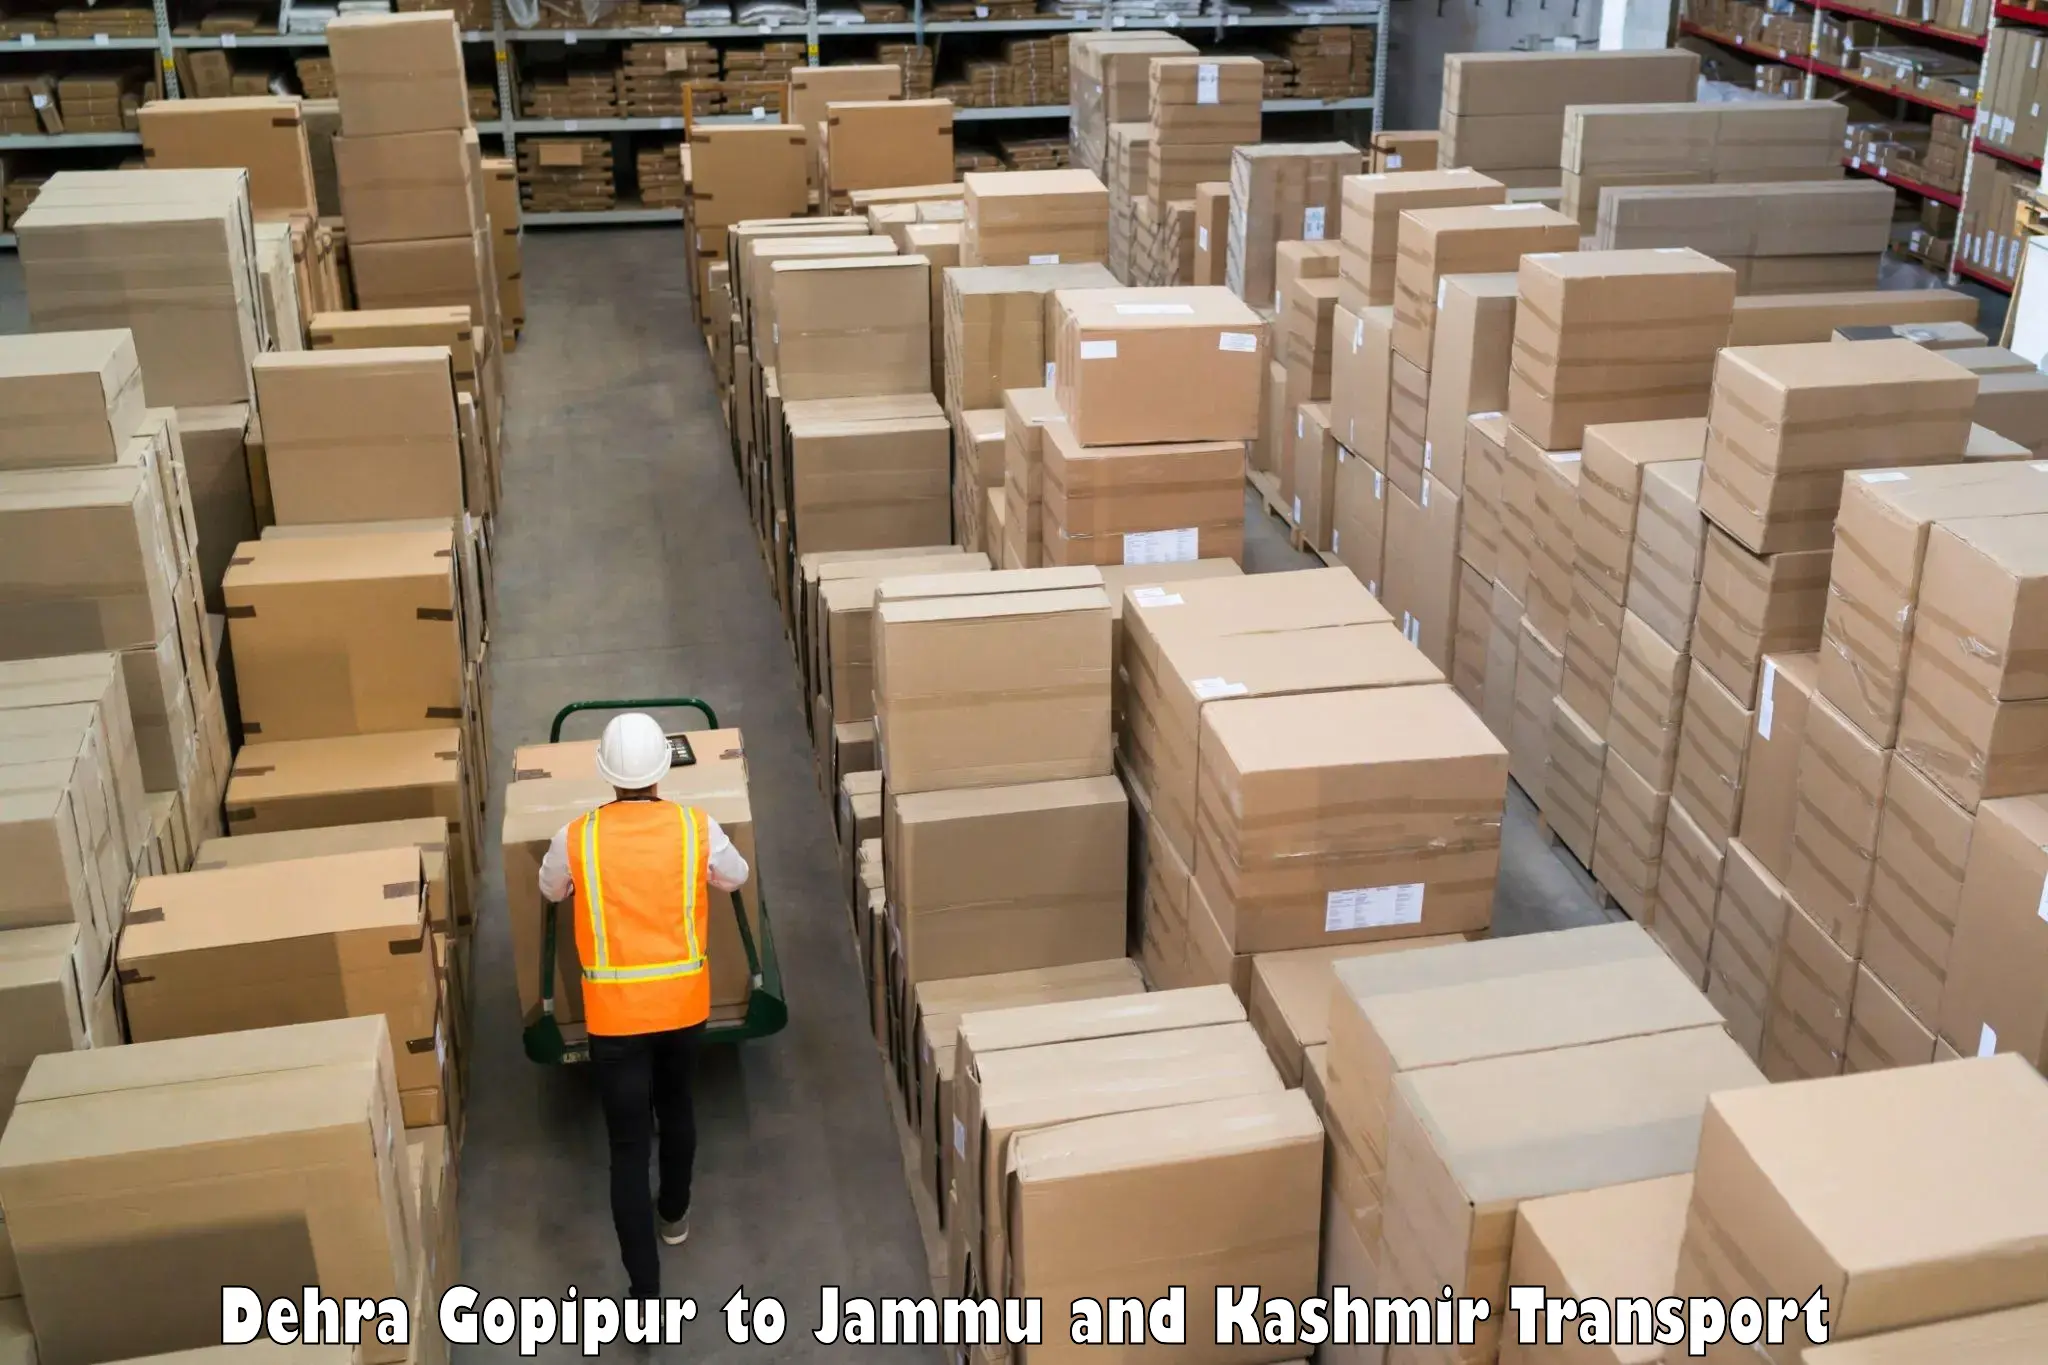 Cargo train transport services Dehra Gopipur to IIT Jammu